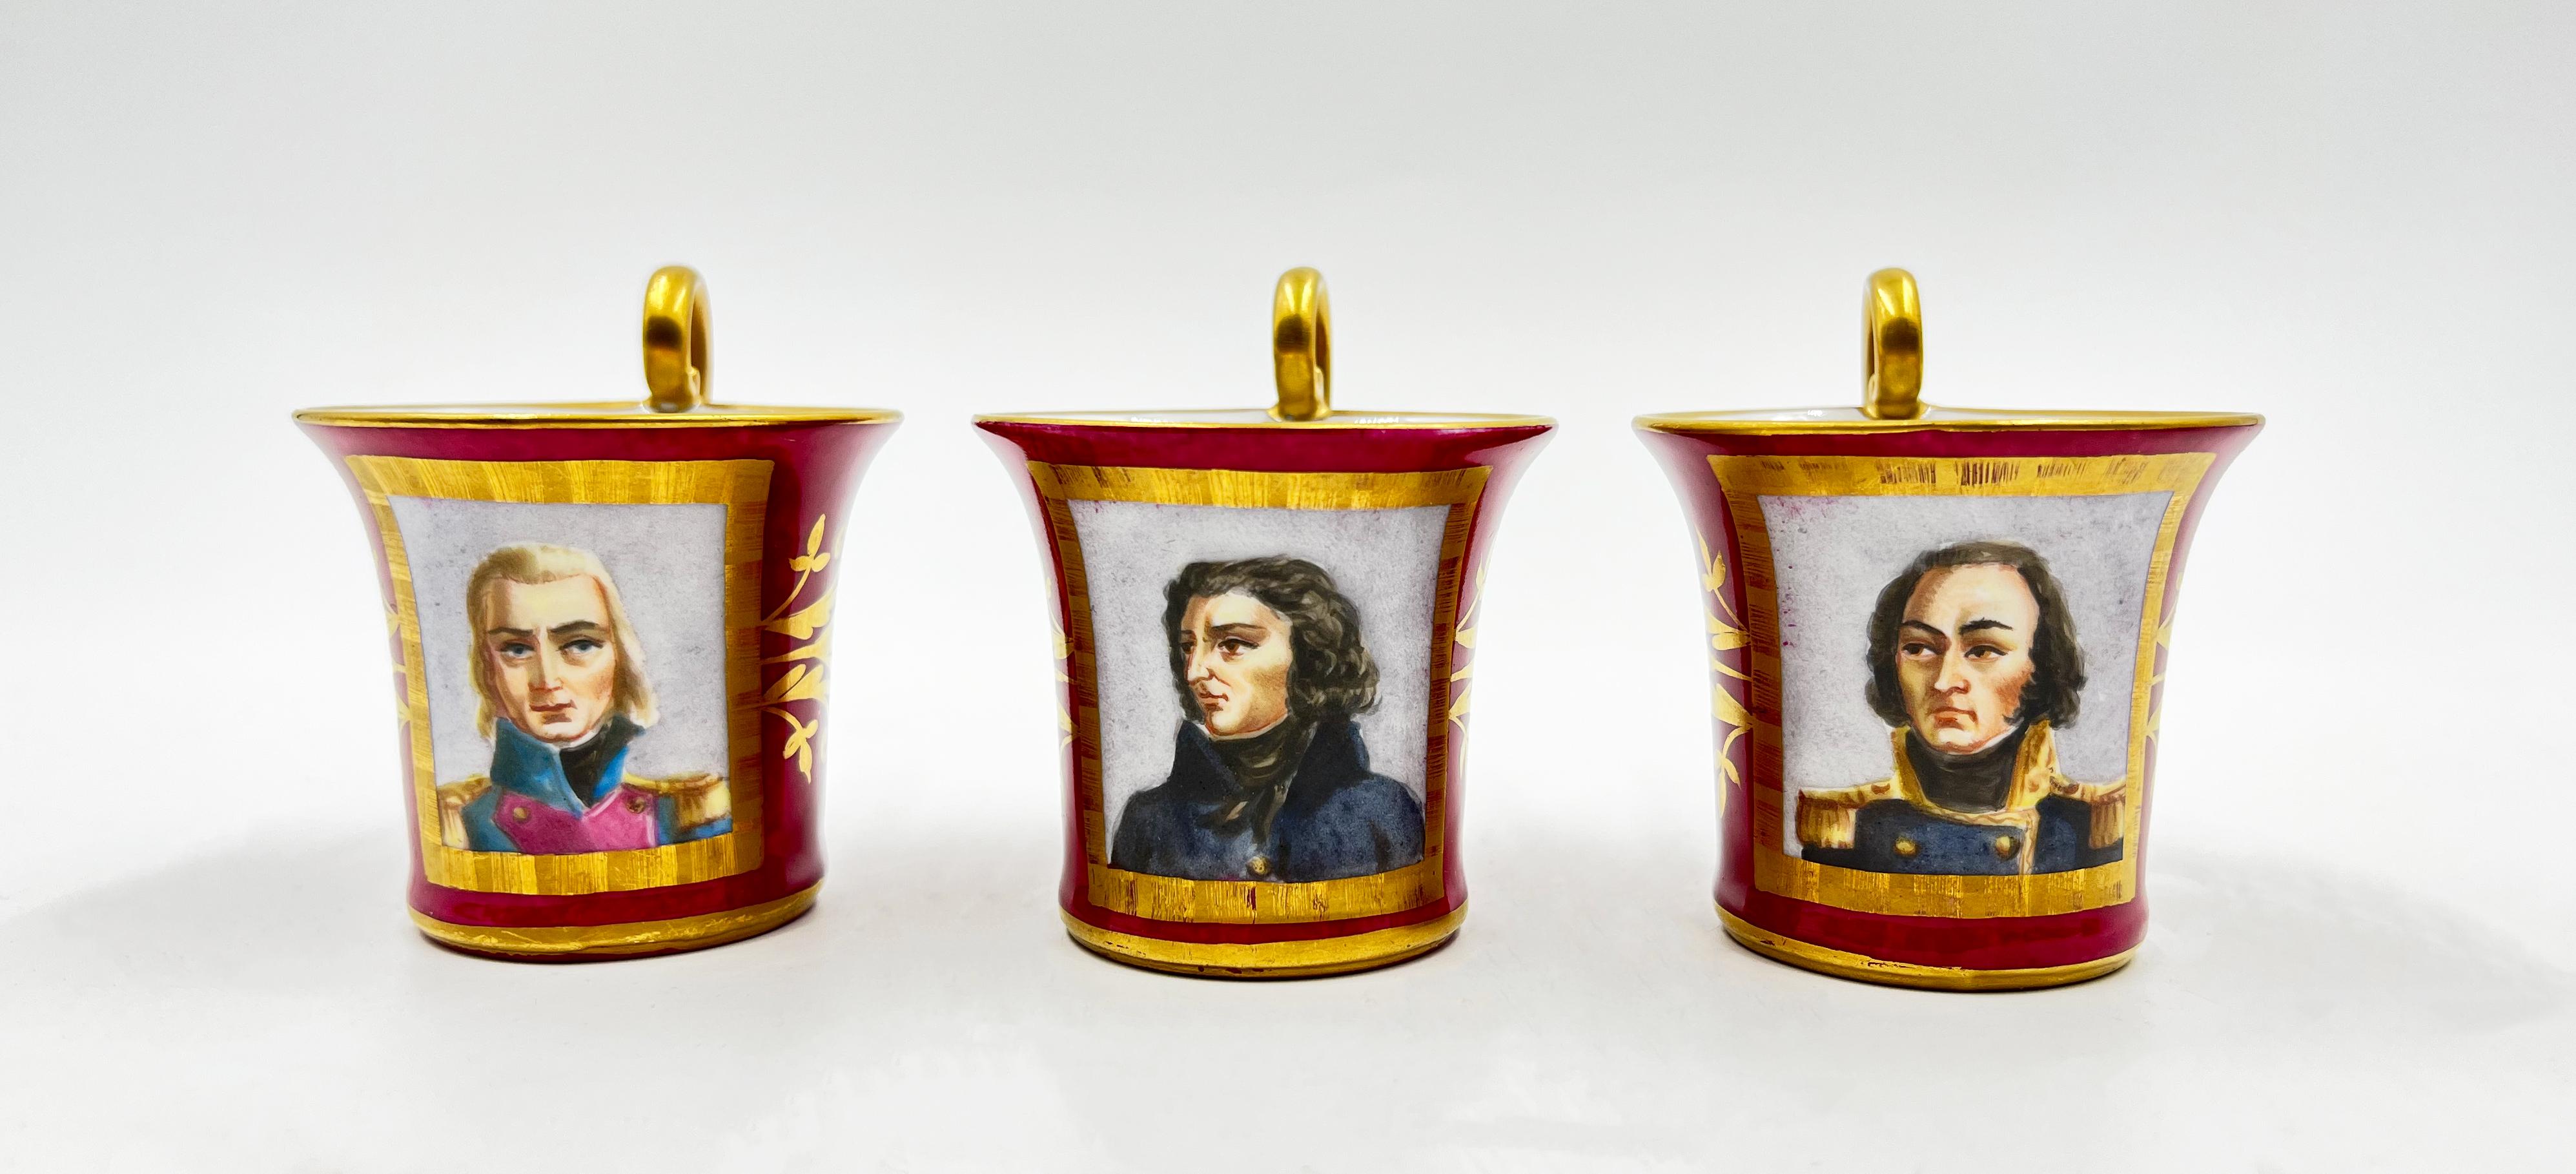 19th Century Paris Porcelain Tea Set Featuring Napoleonic Portraits For Sale 4